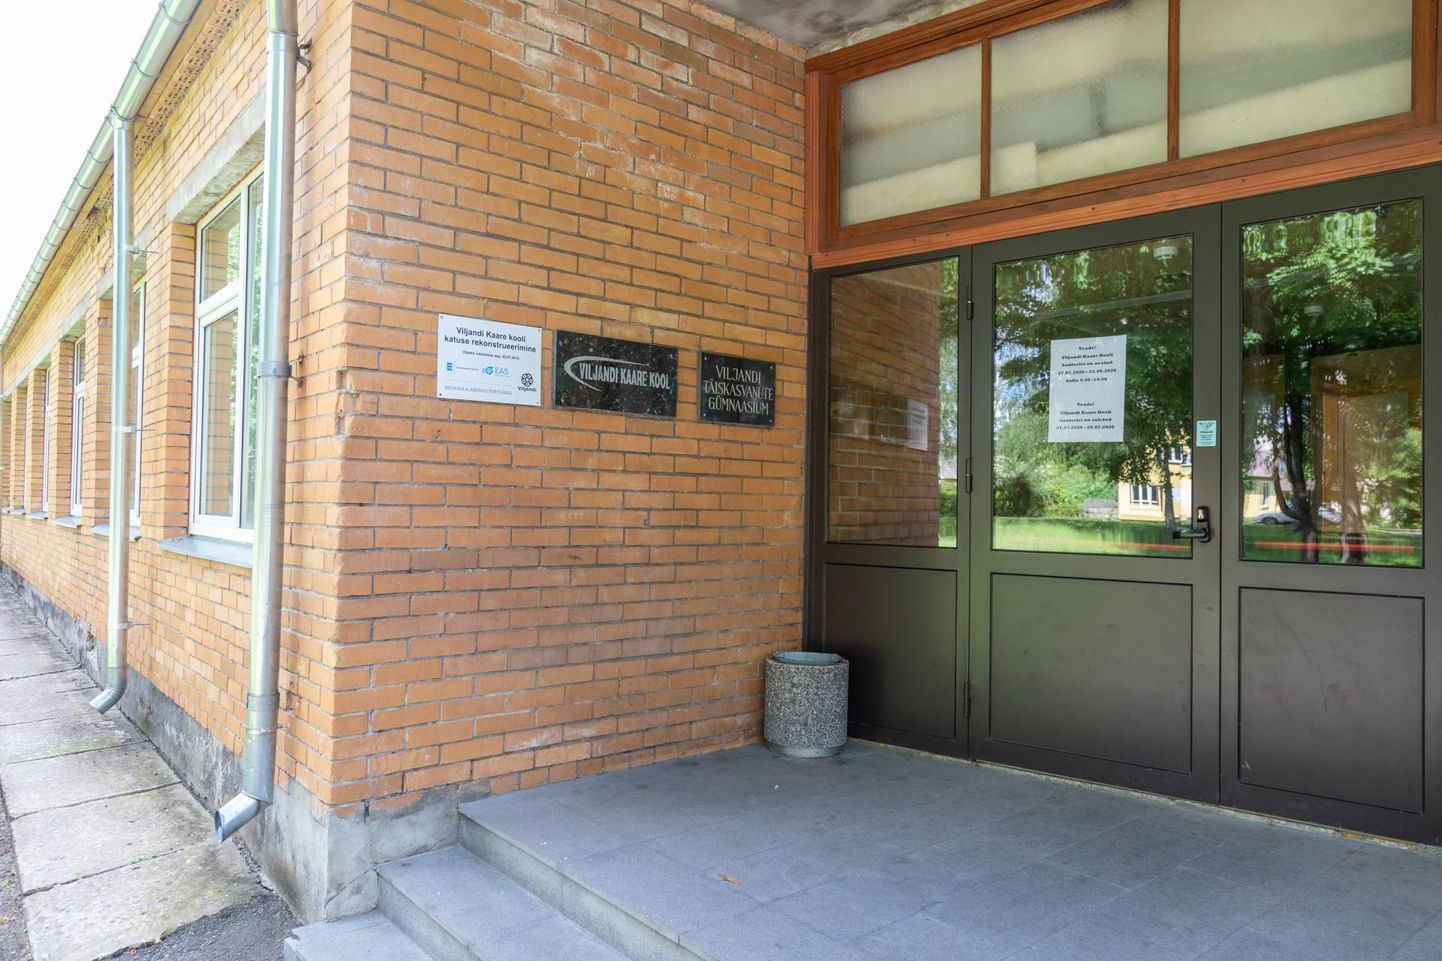 Viljandi Kaare kooli töö jätkamine aadressil Kesk-Kaare tänav 17 nõuab linnavalitsuselt leidlikke lahendusi ja kokkuleppeid valdadega.